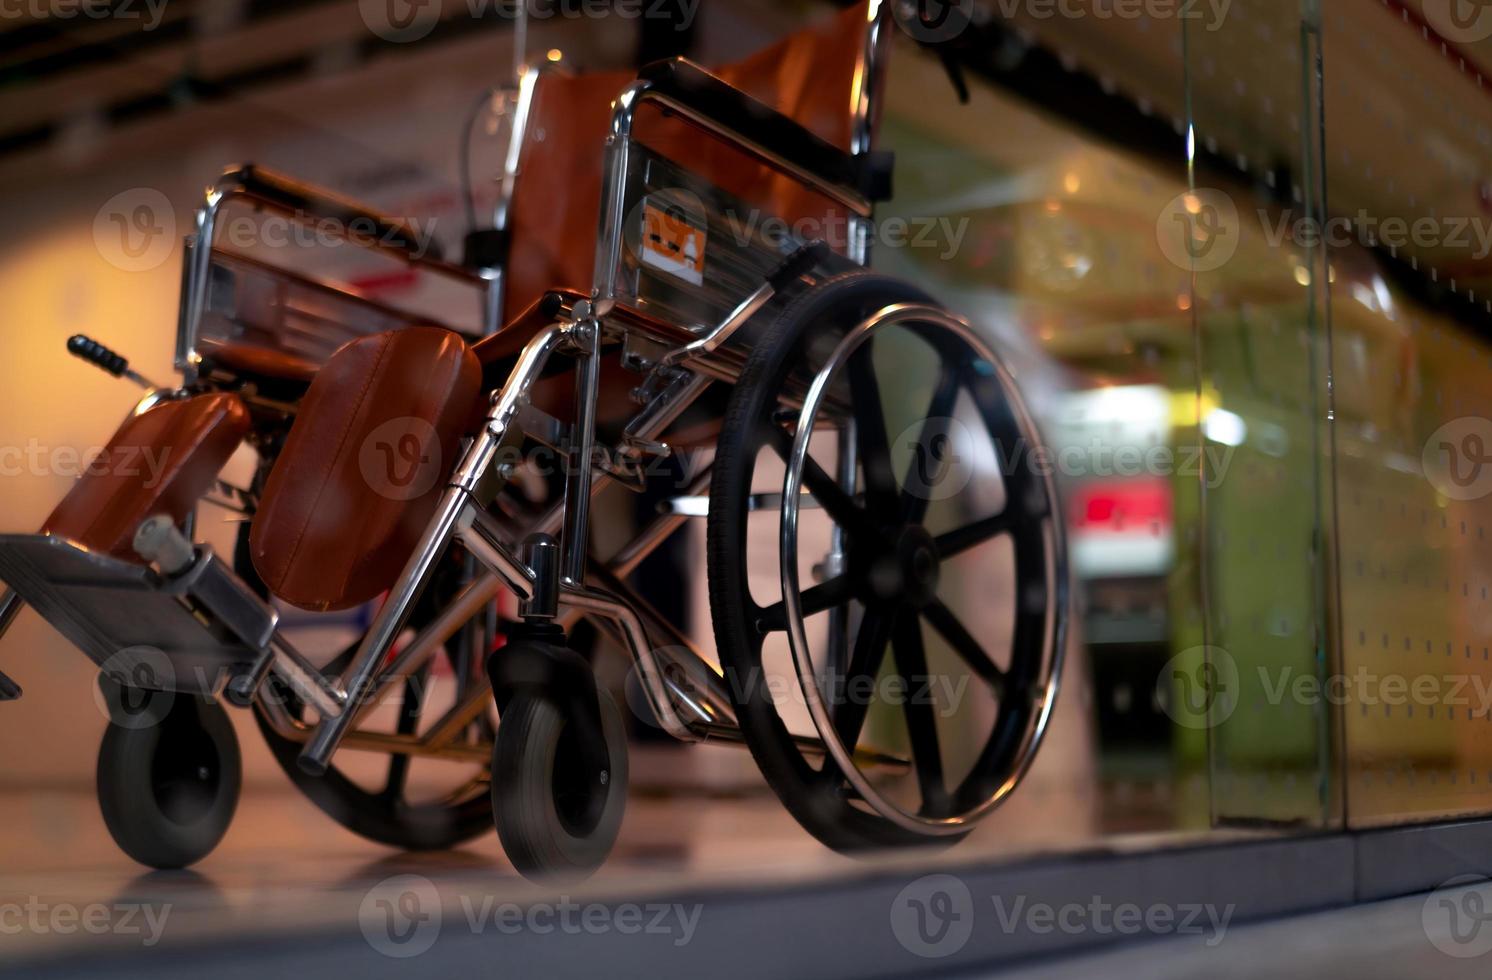 fauteuil roulant vide flou près de l'ascenseur dans un hôpital privé pour les patients de service et les personnes handicapées. équipement médical à l'hôpital pour l'assistance aux personnes handicapées. chaise à roulettes pour les soins aux patients. photo